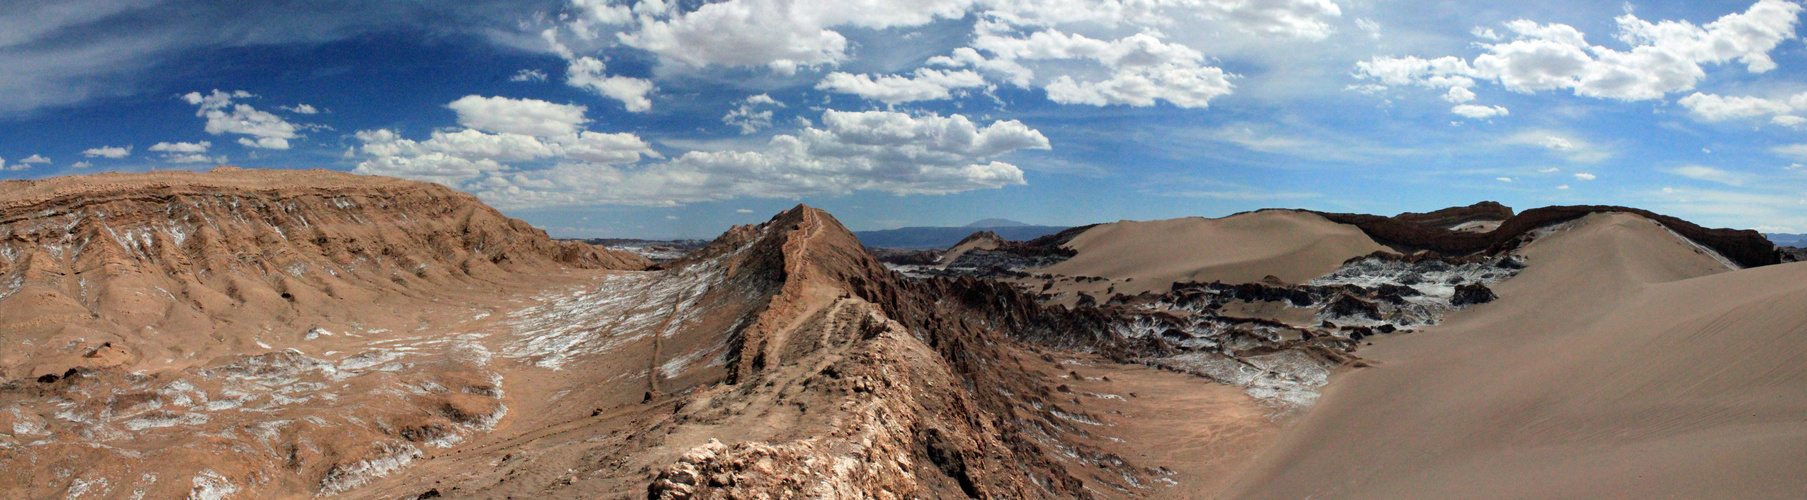 Valle de la Luna- San Pedro de Atacama